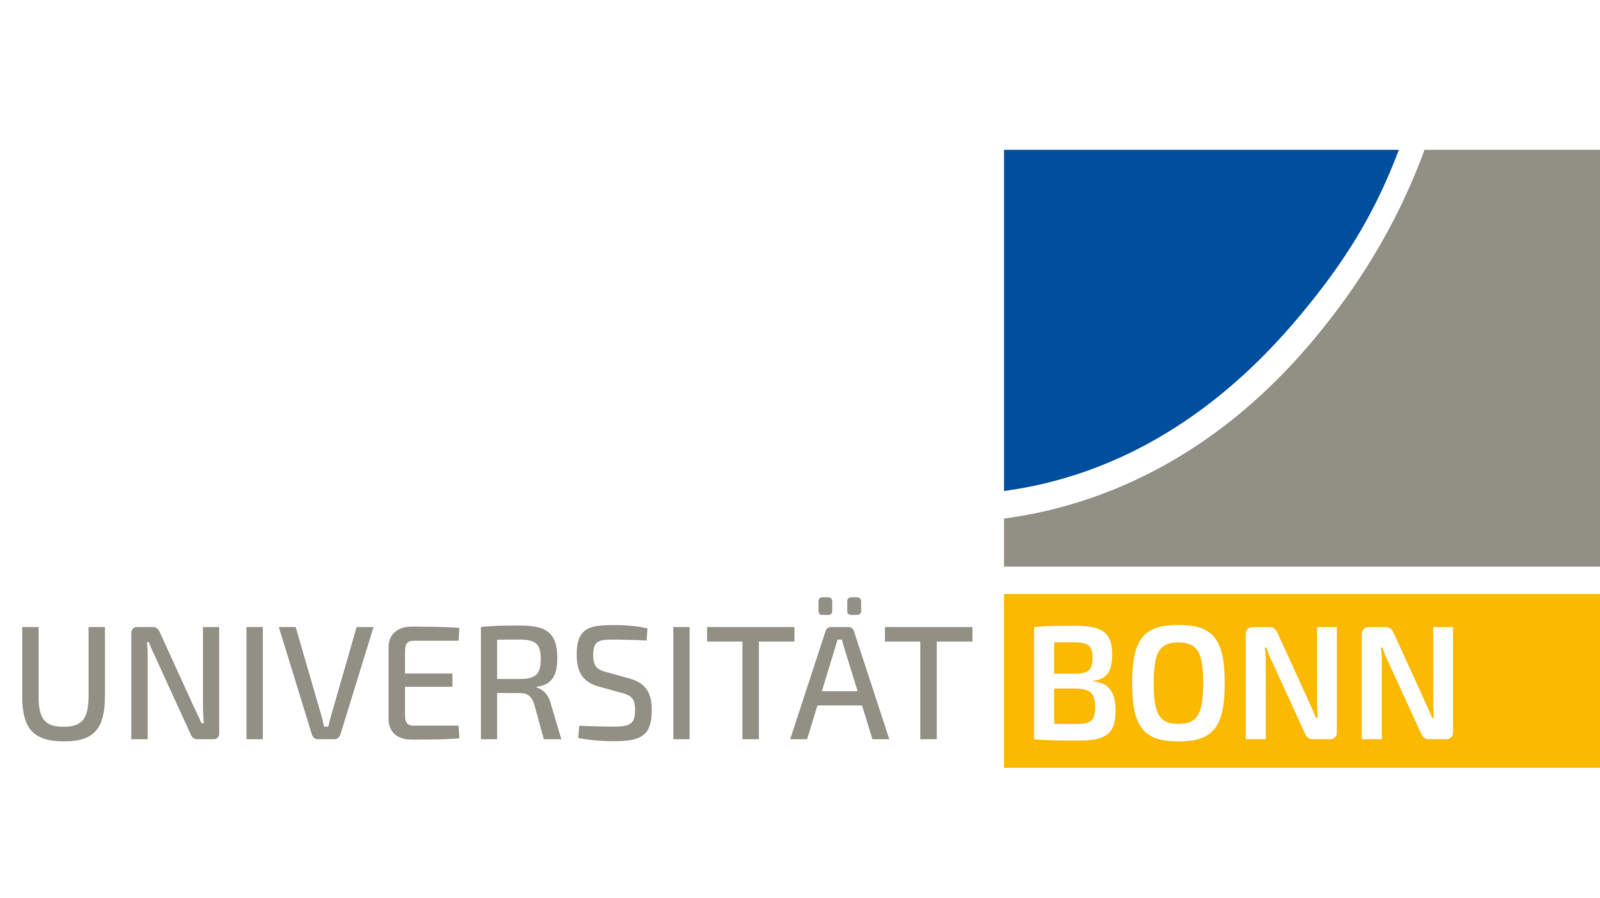 Logo der Rheinischen Friedrich-Wilhelms-Universität Bonn